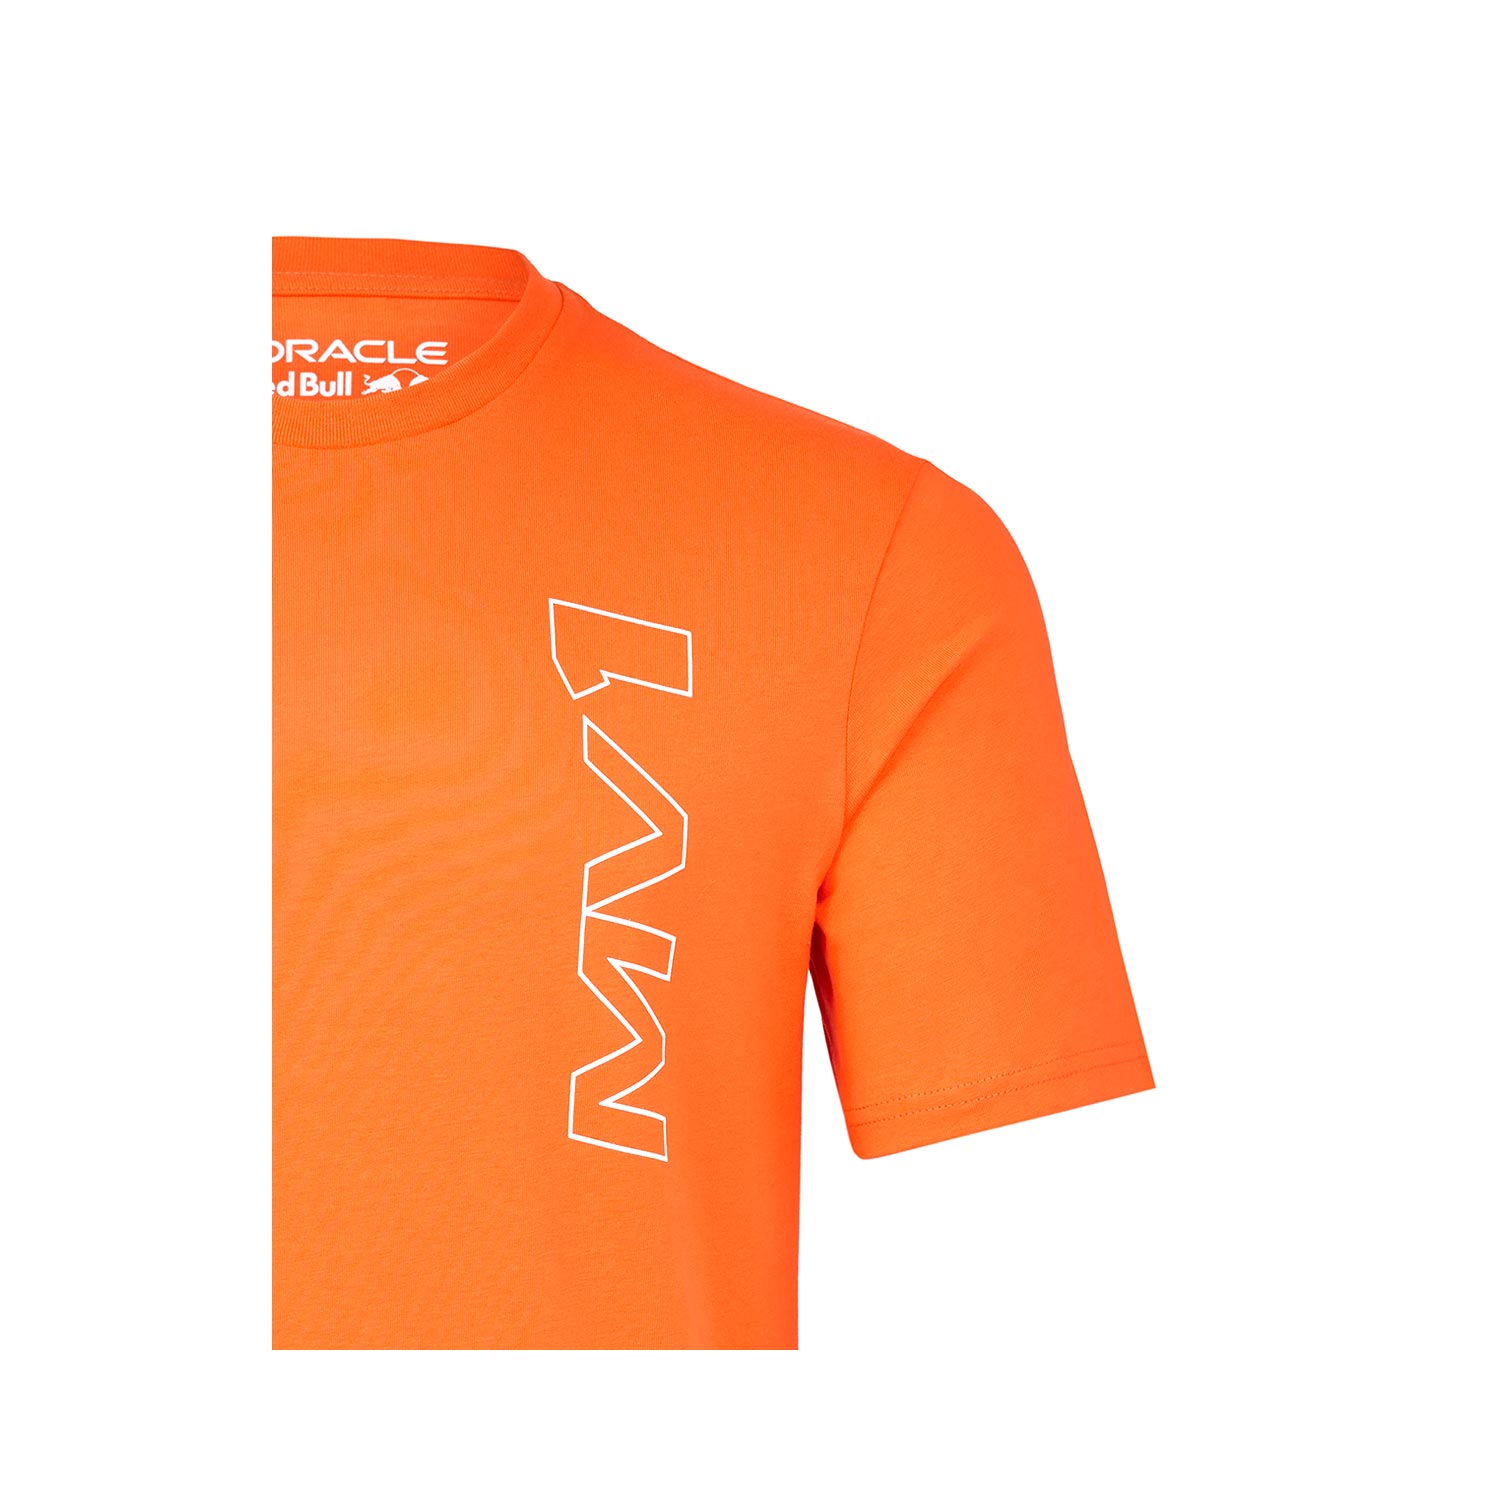 Max Verstappen Red Bull Racing T-Shirt Logo Orange 701202353-004 - men